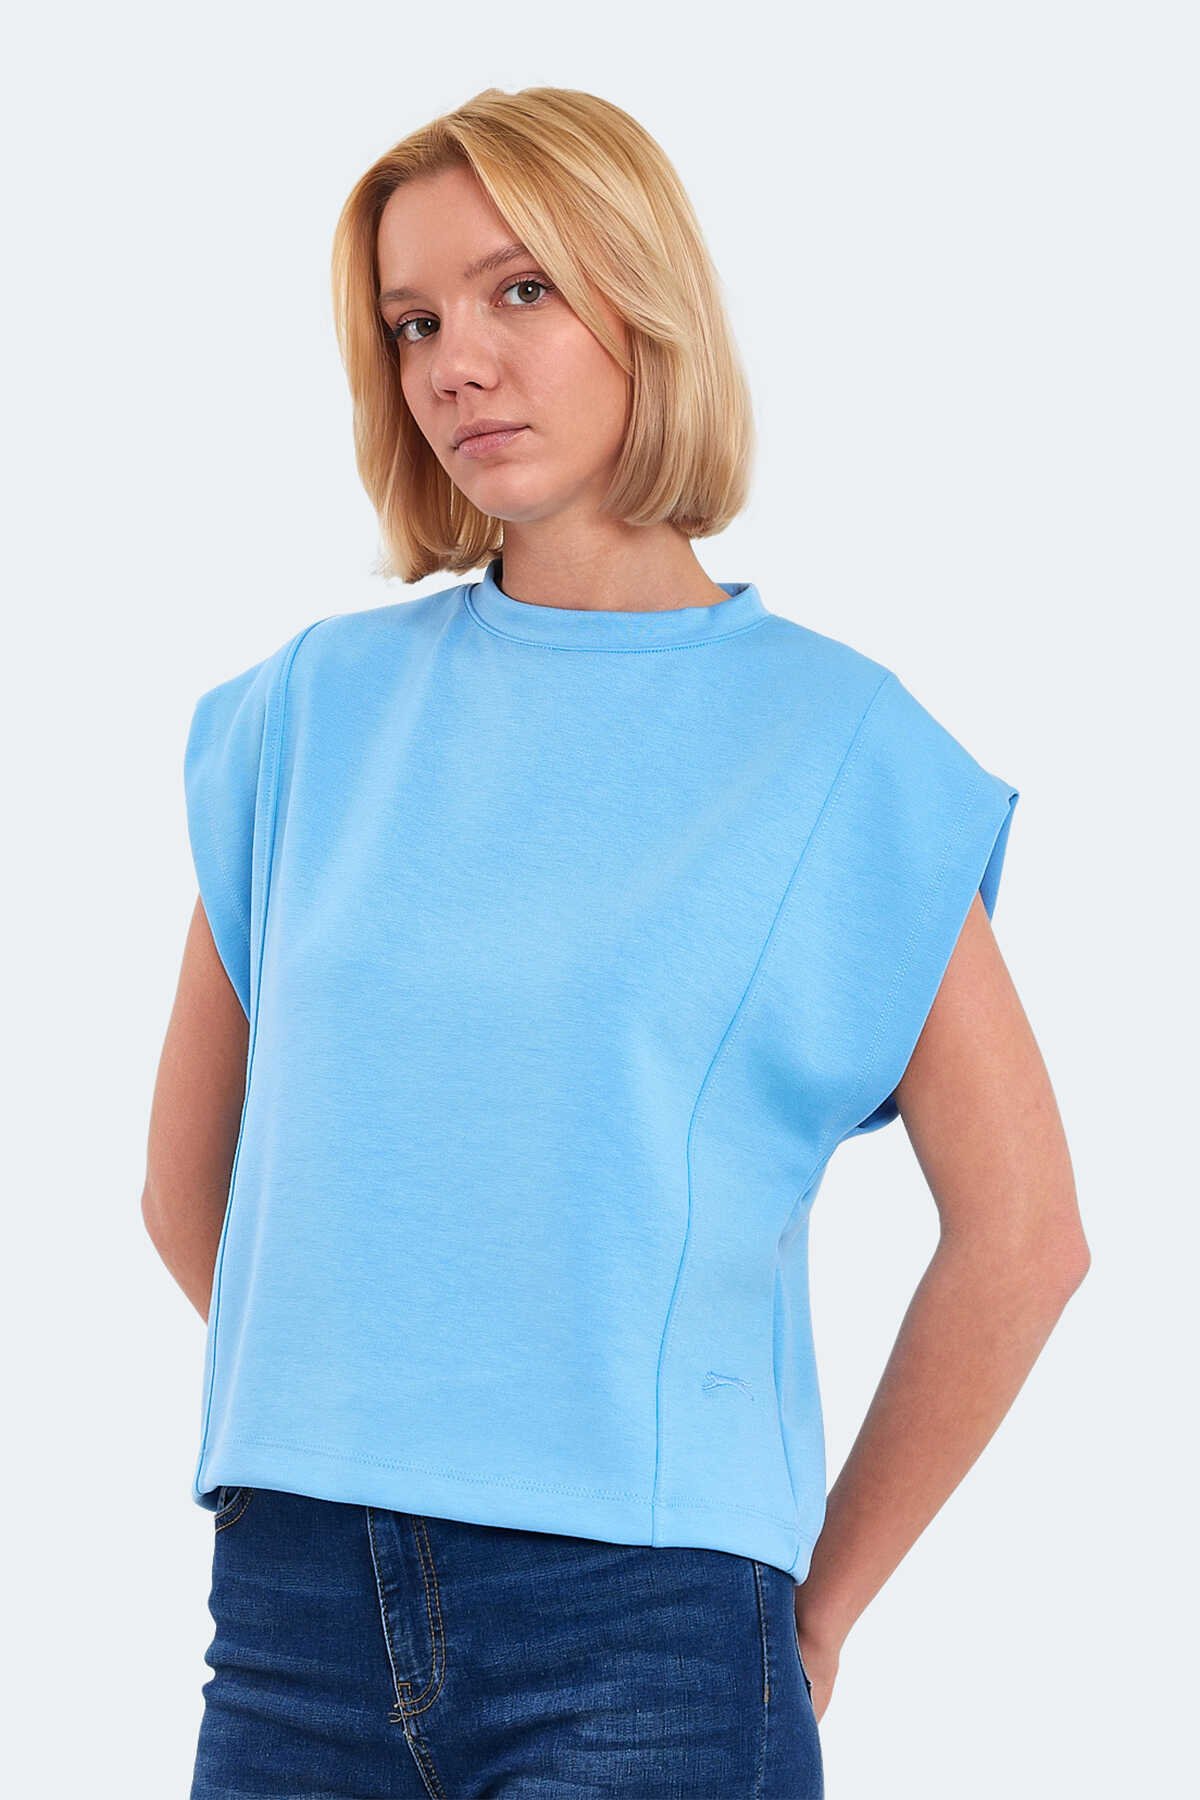 Slazenger - Slazenger VINCENZA Kadın Tişört Mavi